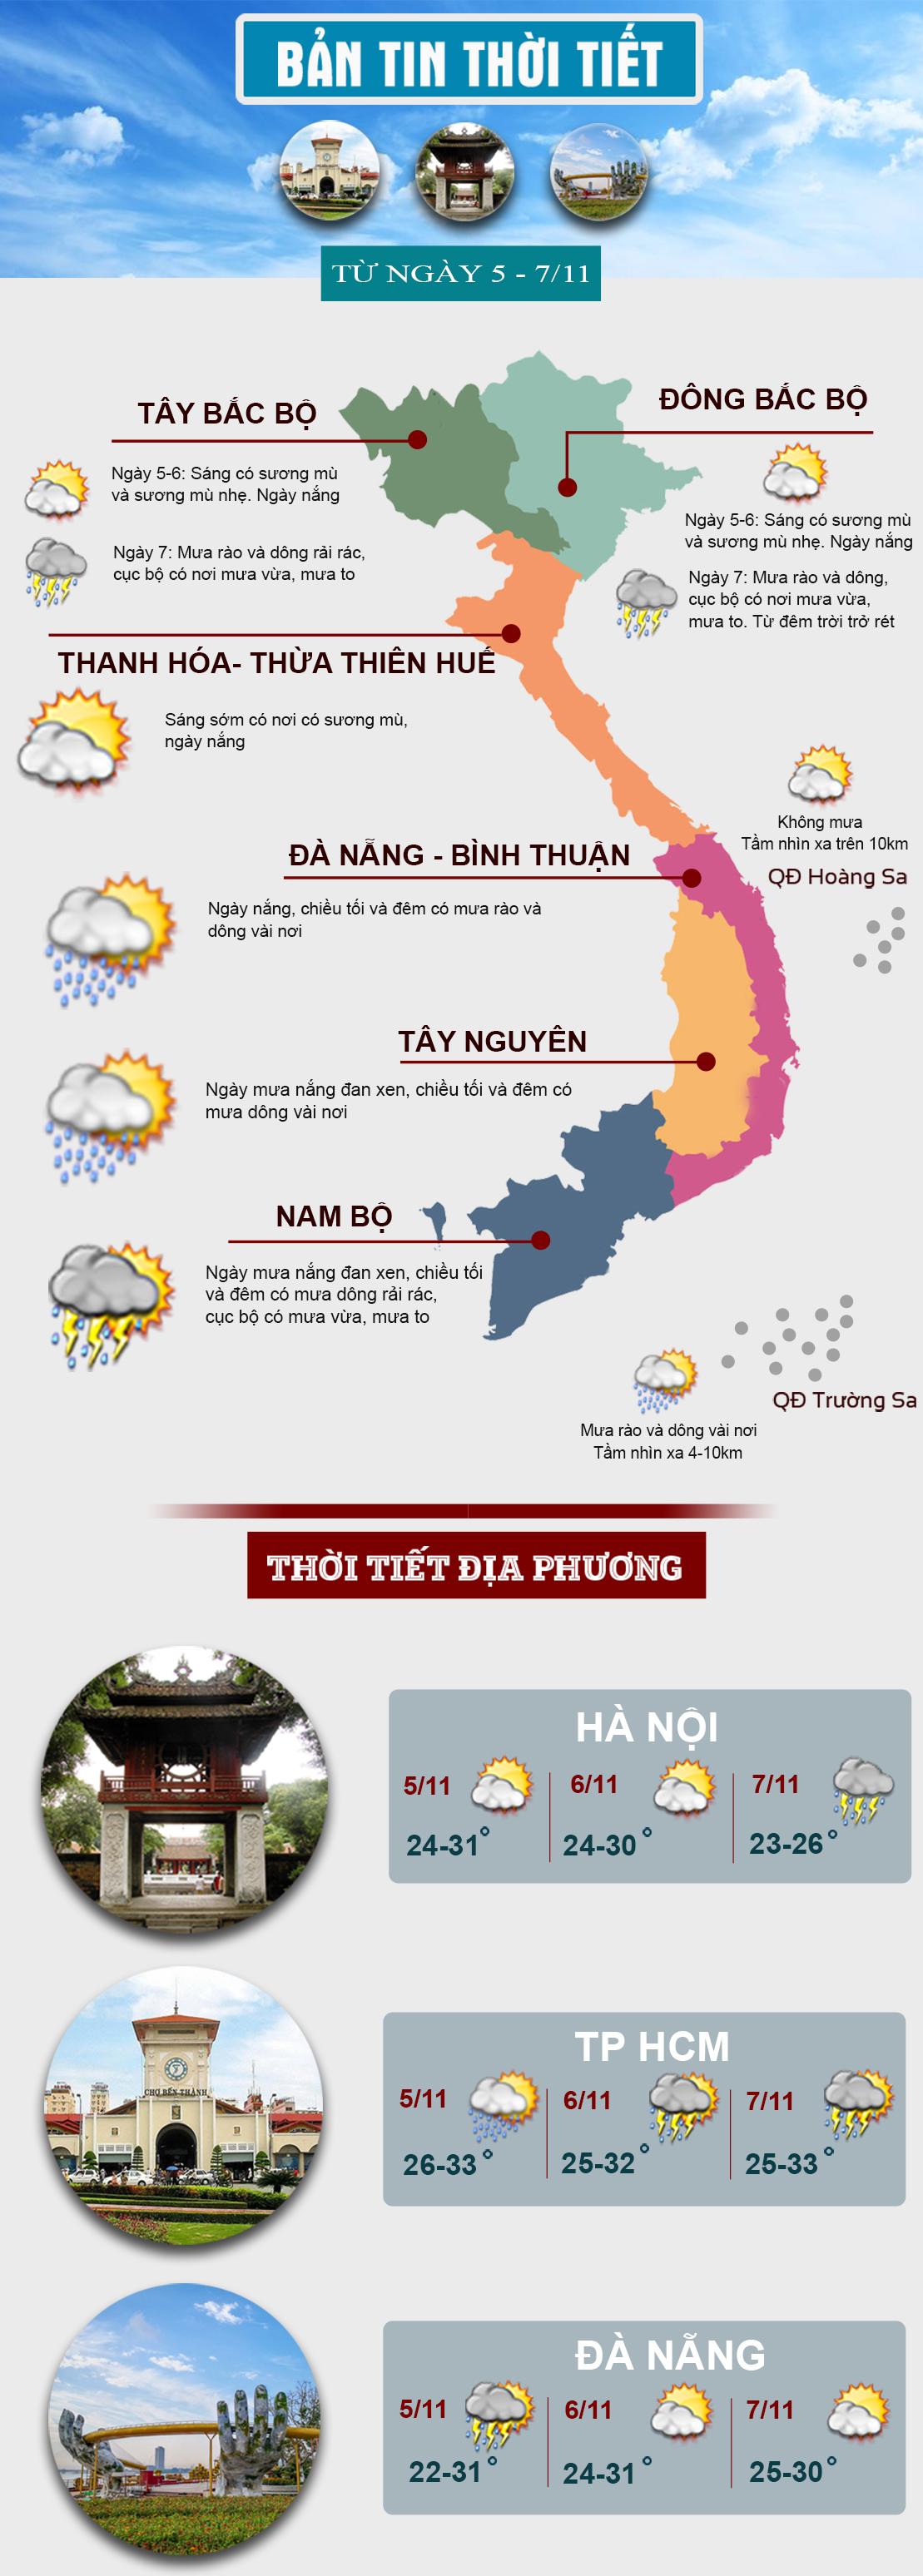 Thời tiết cuối tuần: Miền Bắc sắp chuyển mưa rét, Nam Bộ mưa dông về chiều tối - 1